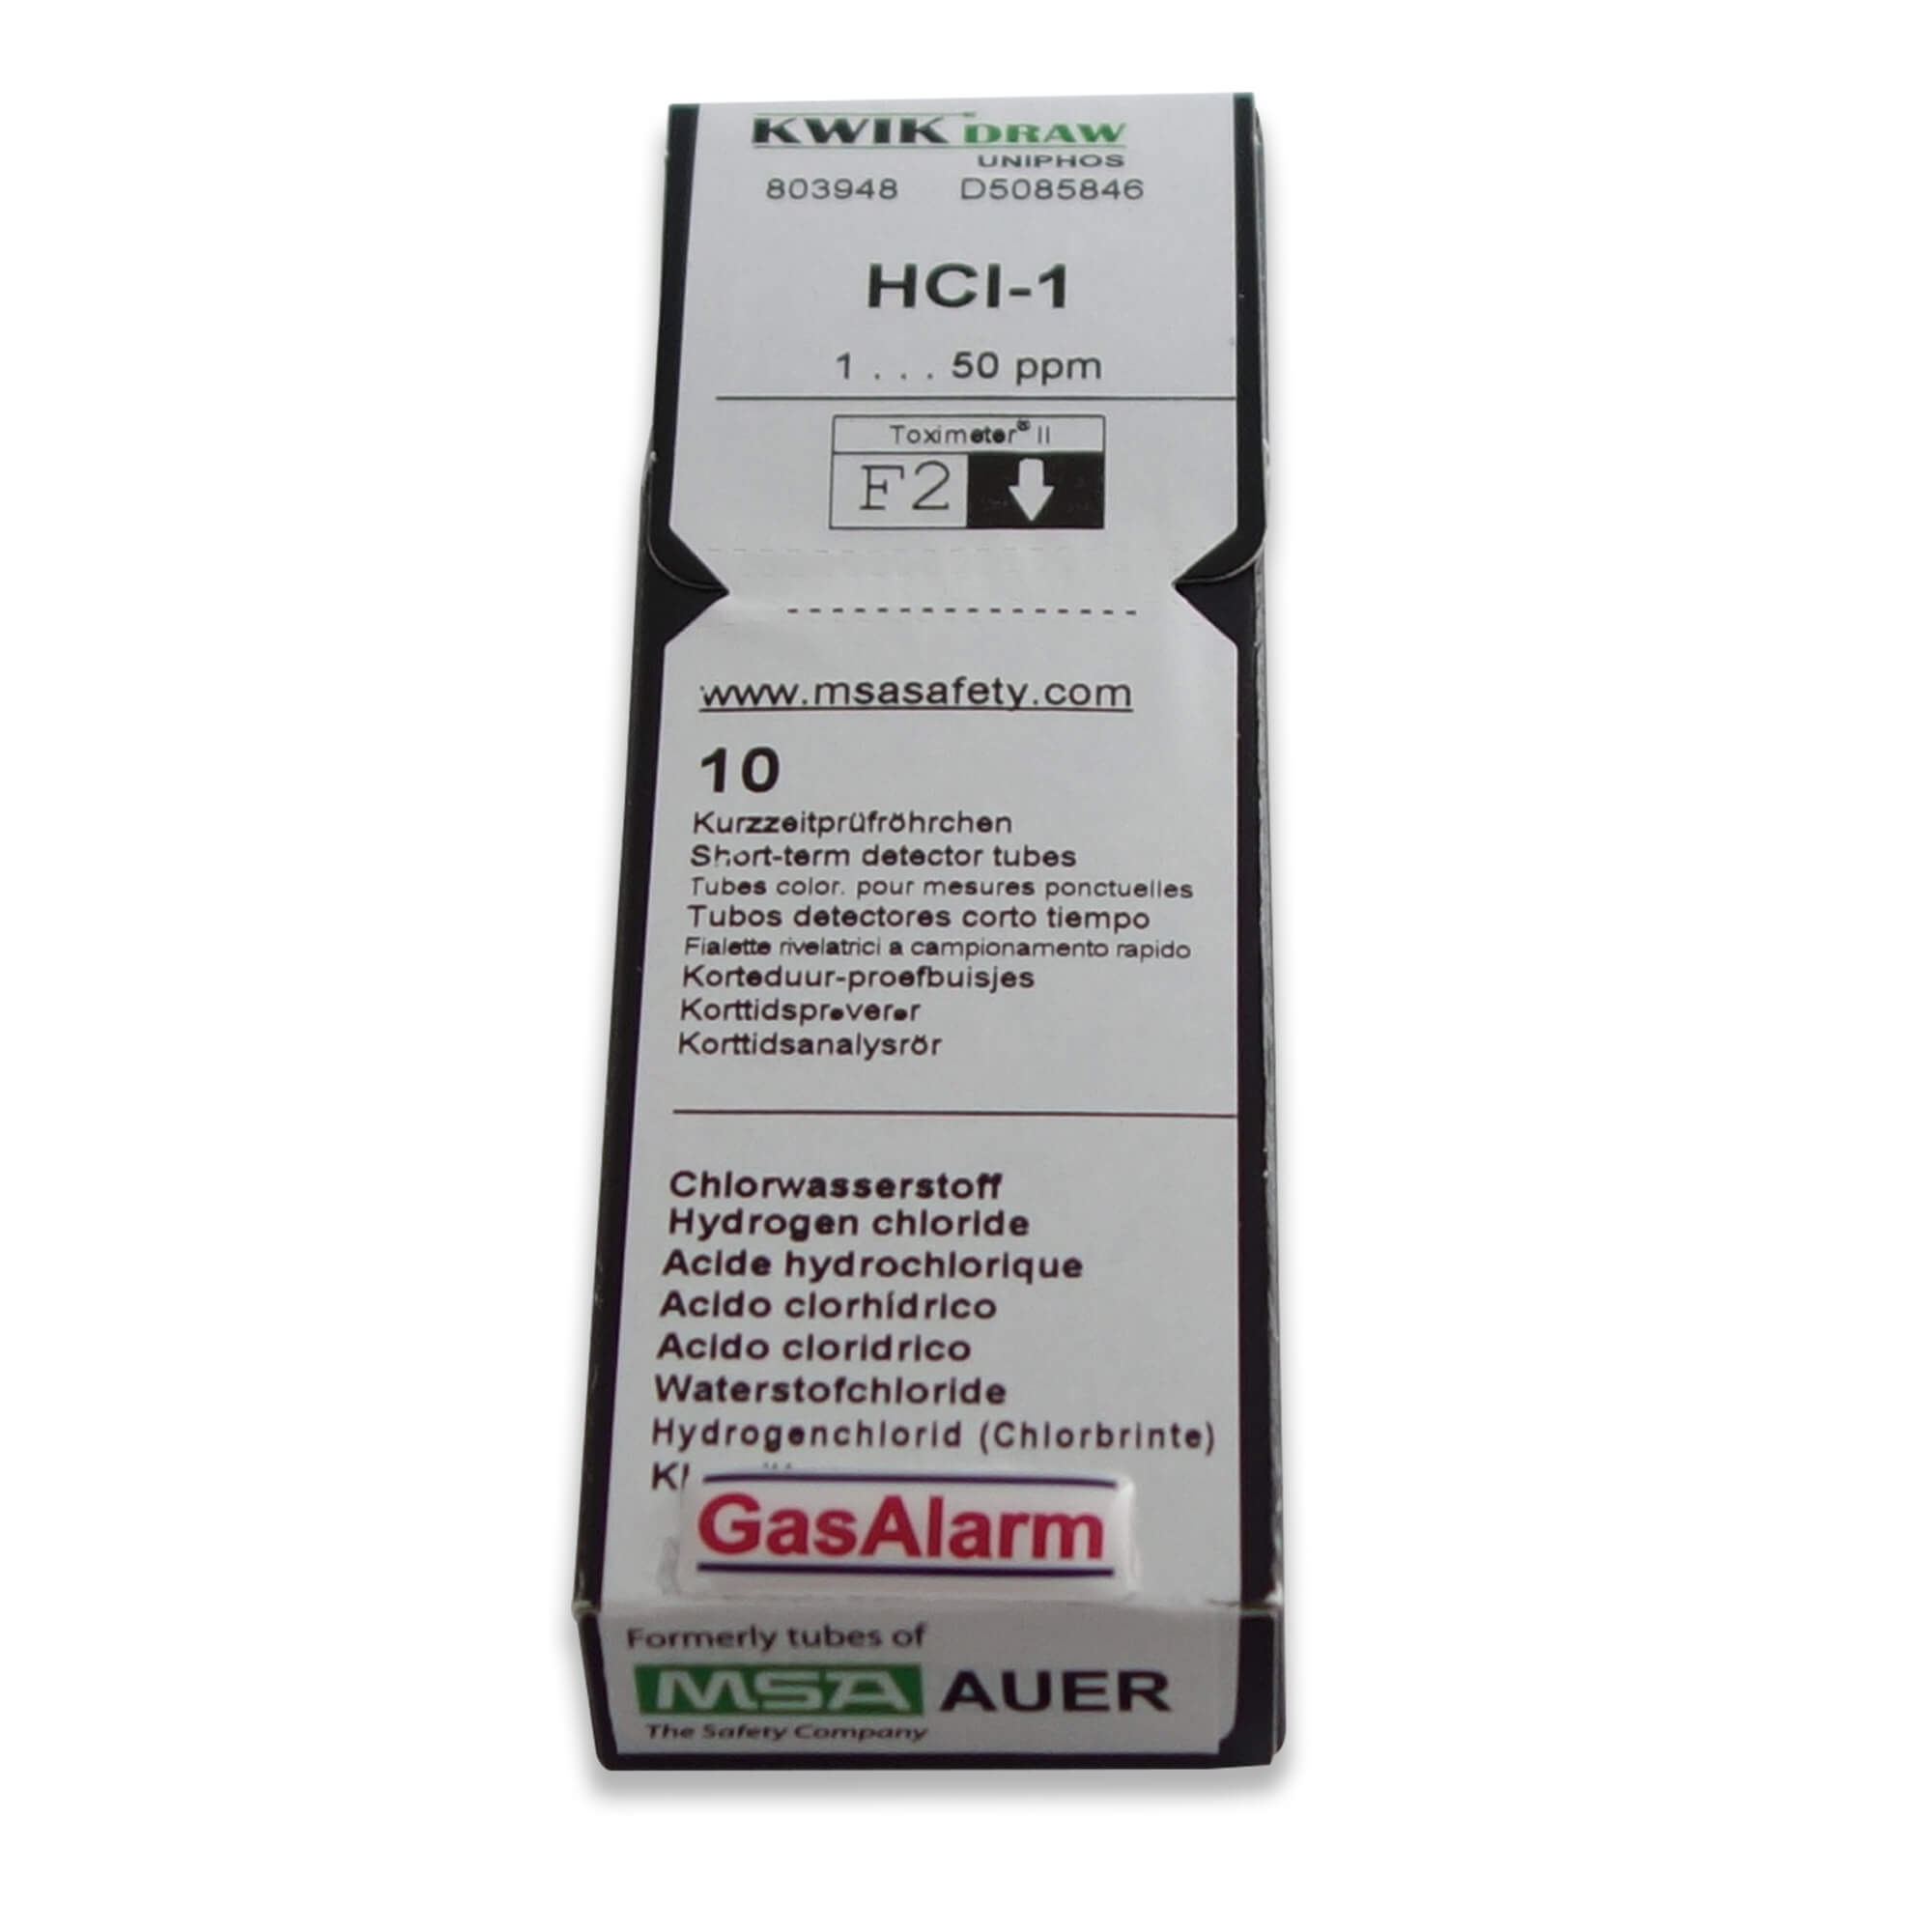 D5085820 - Carbon Monoxide Gas Detection Tubes